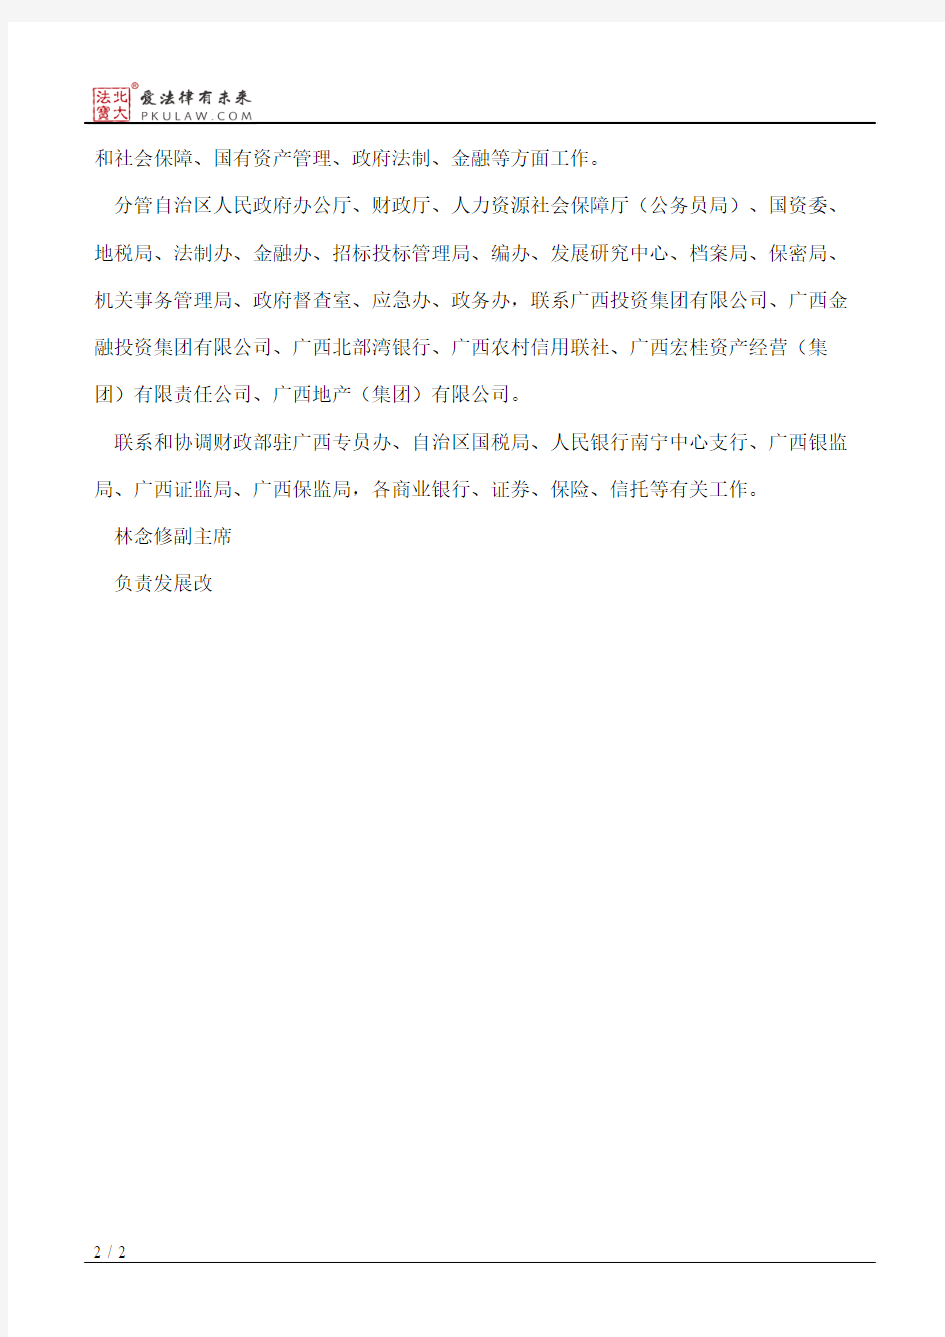 广西壮族自治区人民政府关于自治区主席副主席工作分工的通知